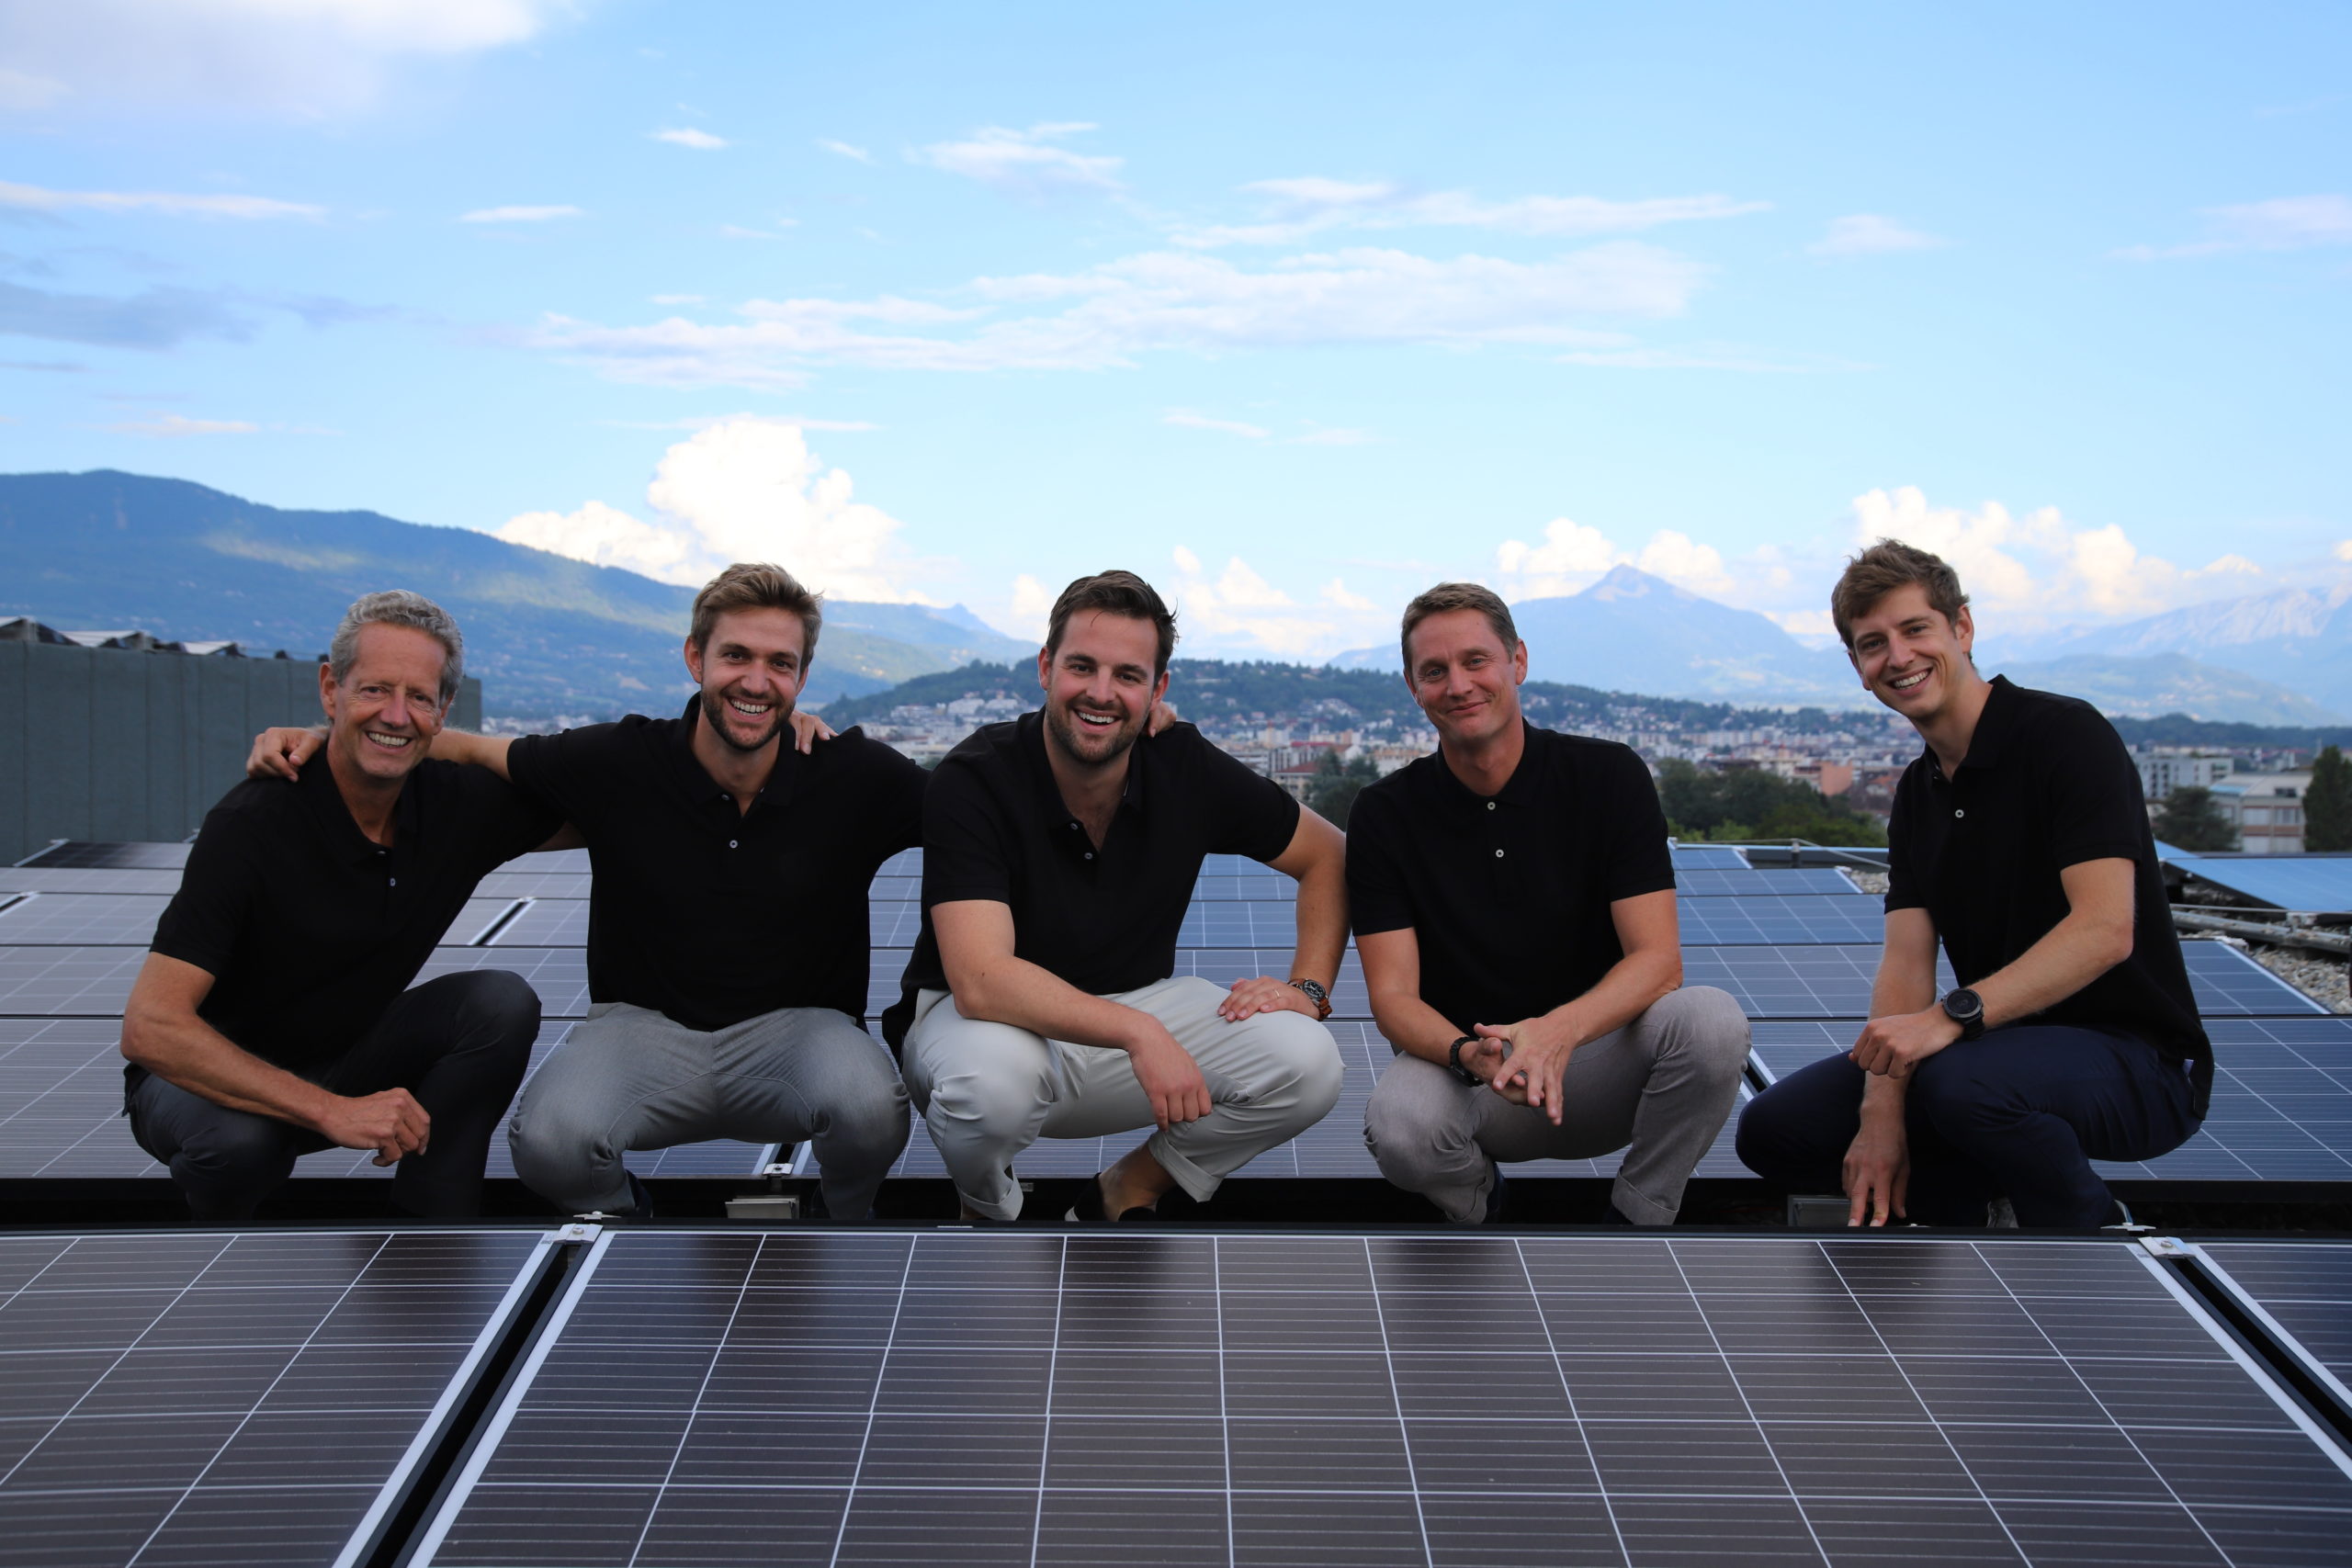 équipe tera solar avec panneaux photovoltaïques